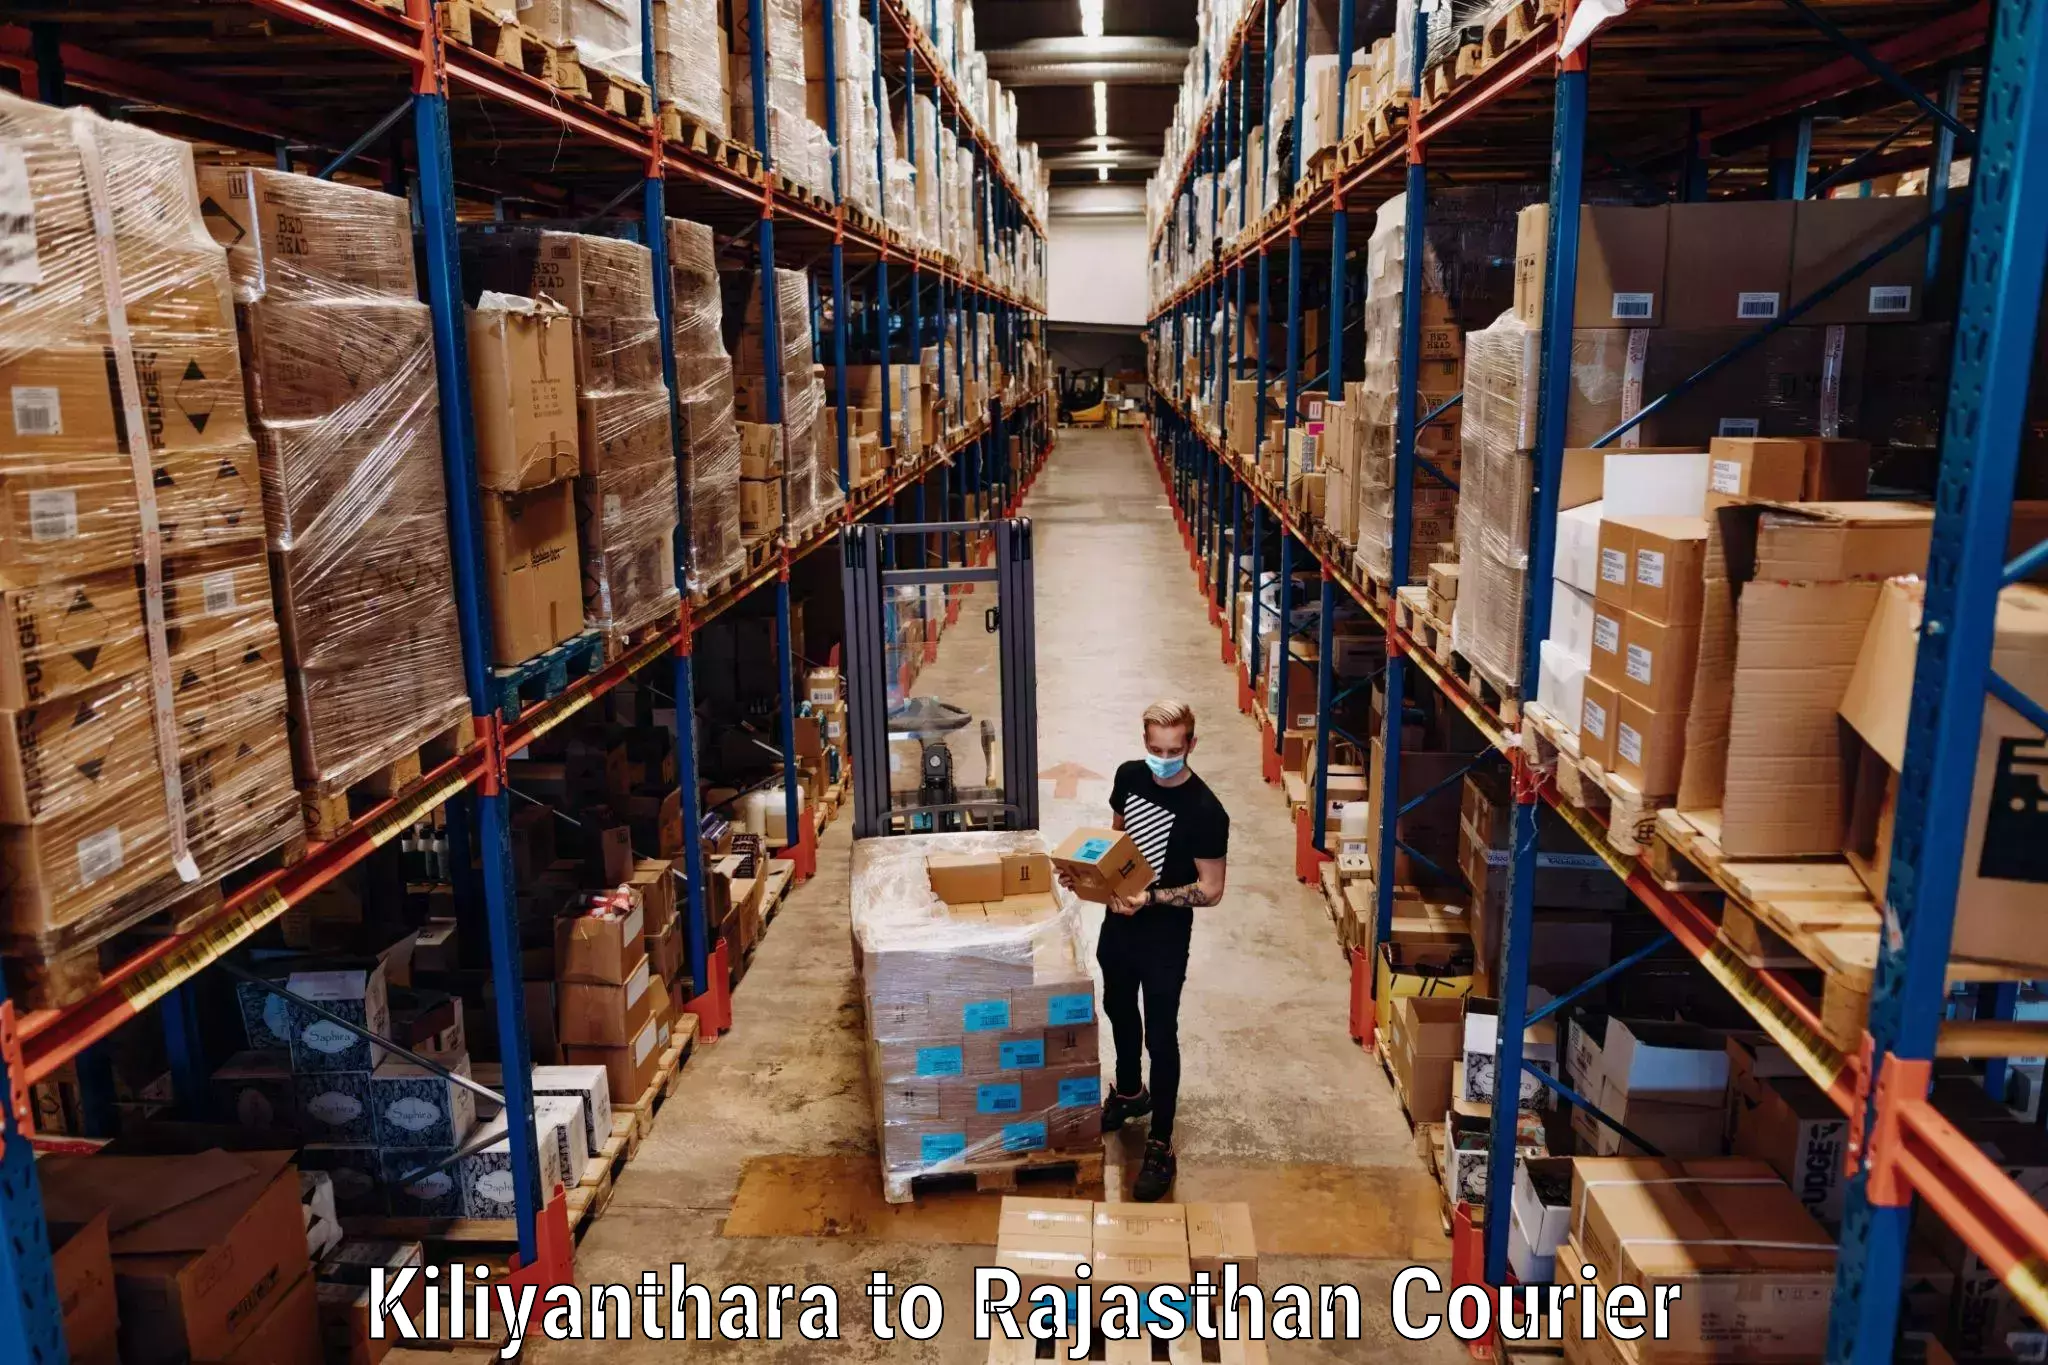 Urgent luggage shipment Kiliyanthara to Yeswanthapur